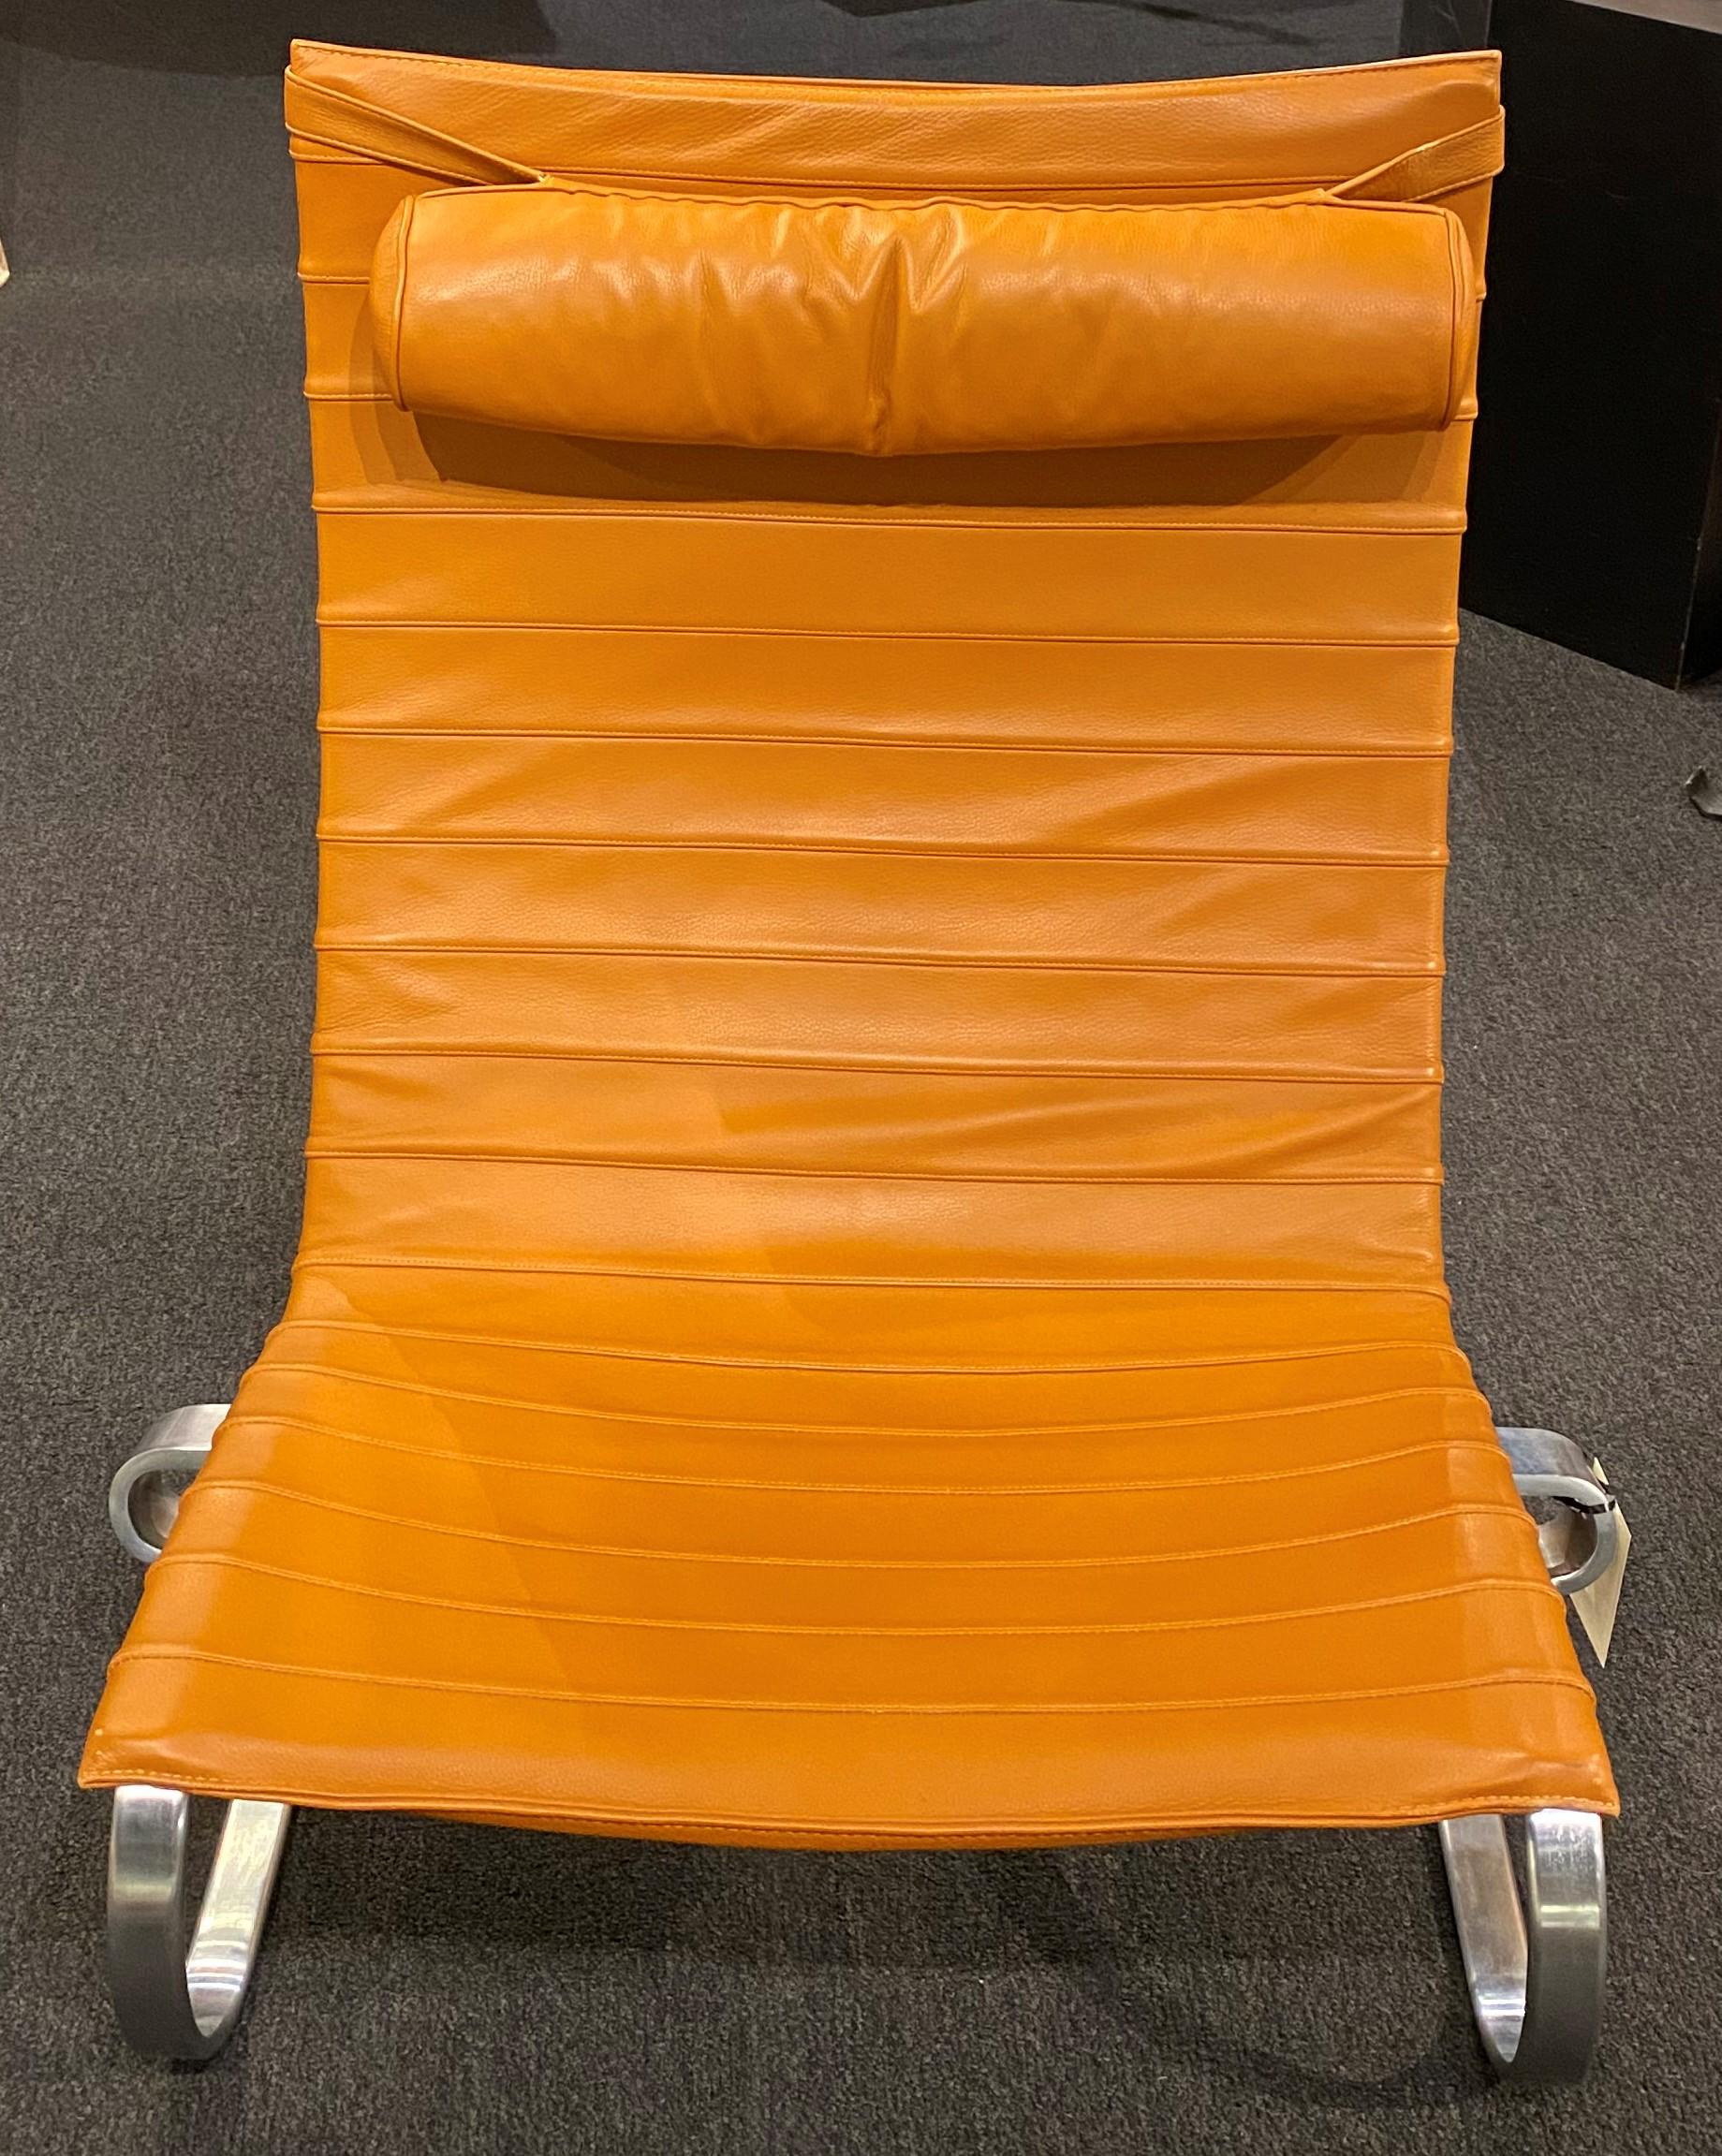 Der von Poul Kjærholm für Fritz Hansen A/S in Dänemark entworfene PK20 ist ein bequemer und eleganter Lounge- oder Sessel mit orangefarbenem Ledersitz und Kopfstütze in einem flexiblen, matt verchromten Federstahlgestell. Signiert und datiert 2000